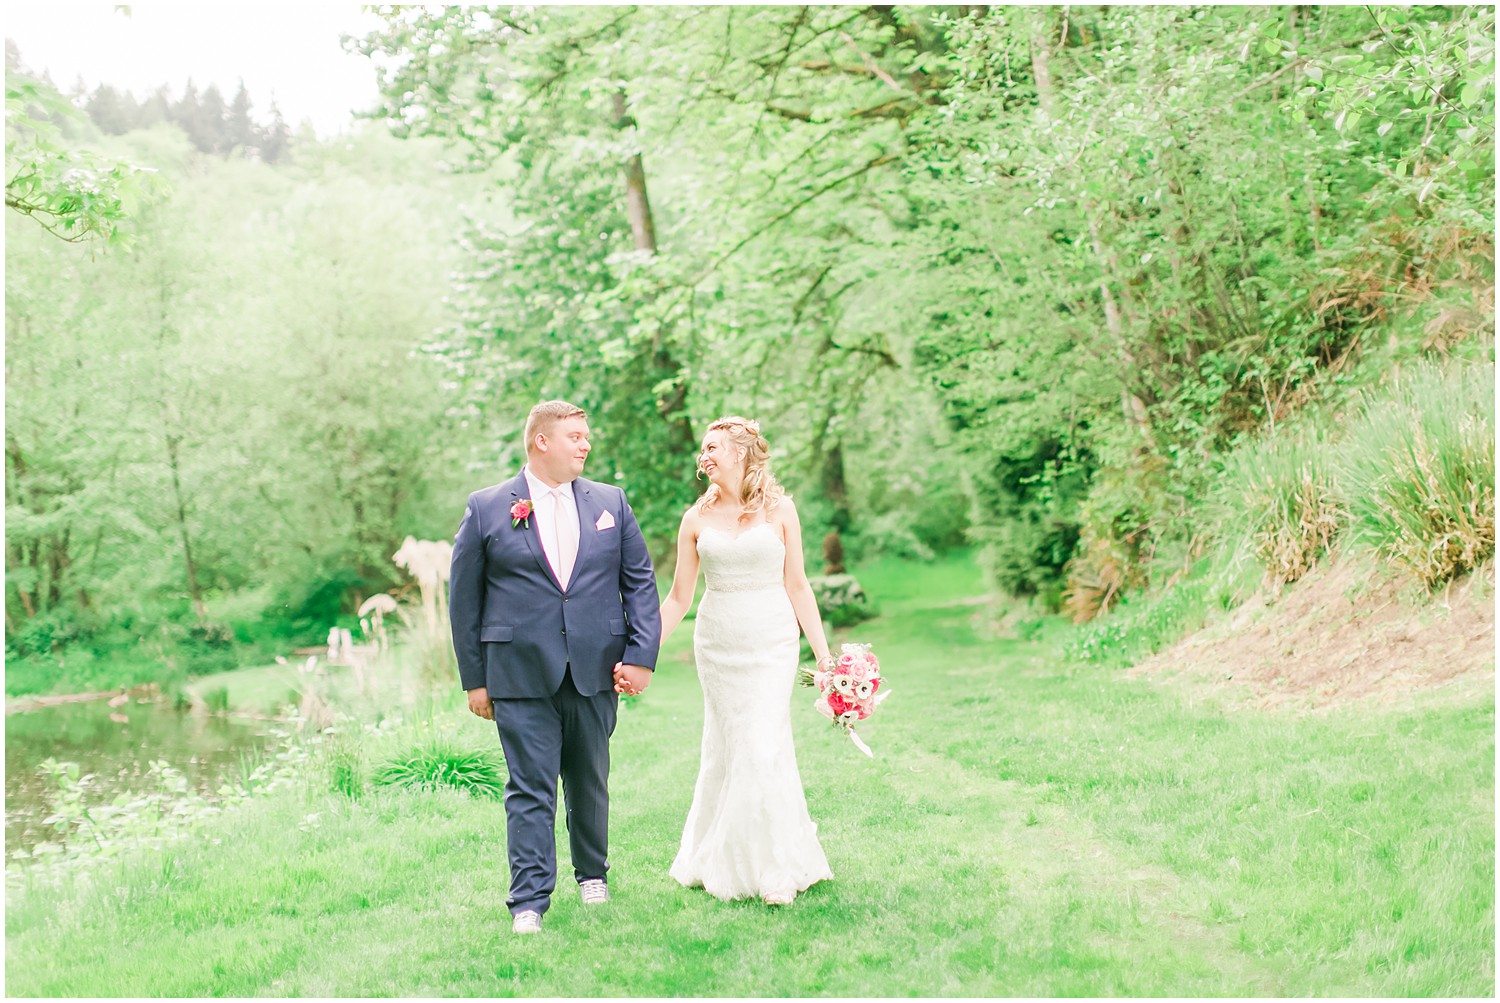 Sanders Estate Garden Wedding | Randy & Samantha